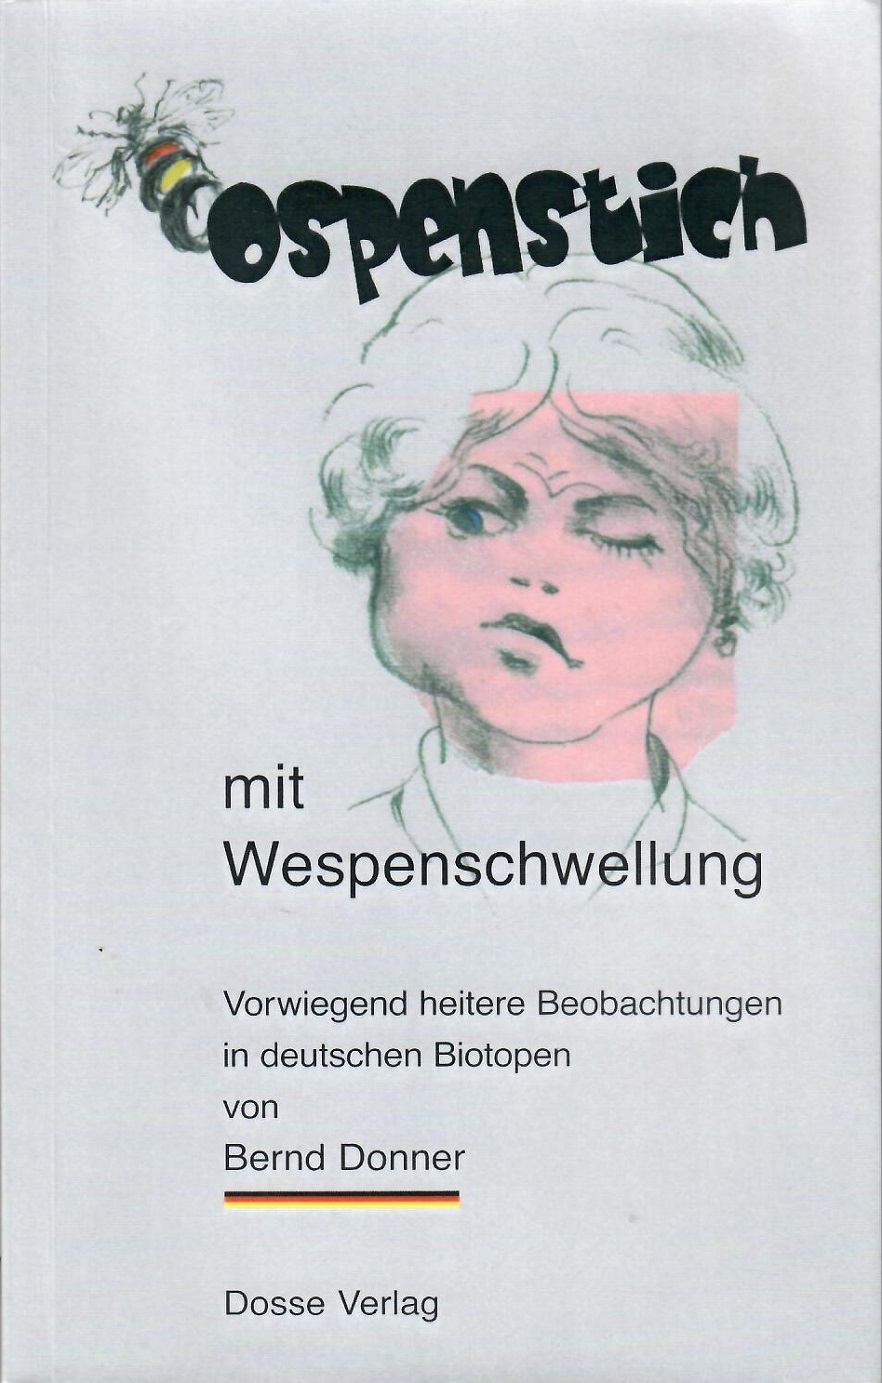 Ospenstich mit Wespenschwellung. Vorwiegend heitere Beobachtungen in deutschen Biotopen. 2. Auflage. - Donner, Bernd